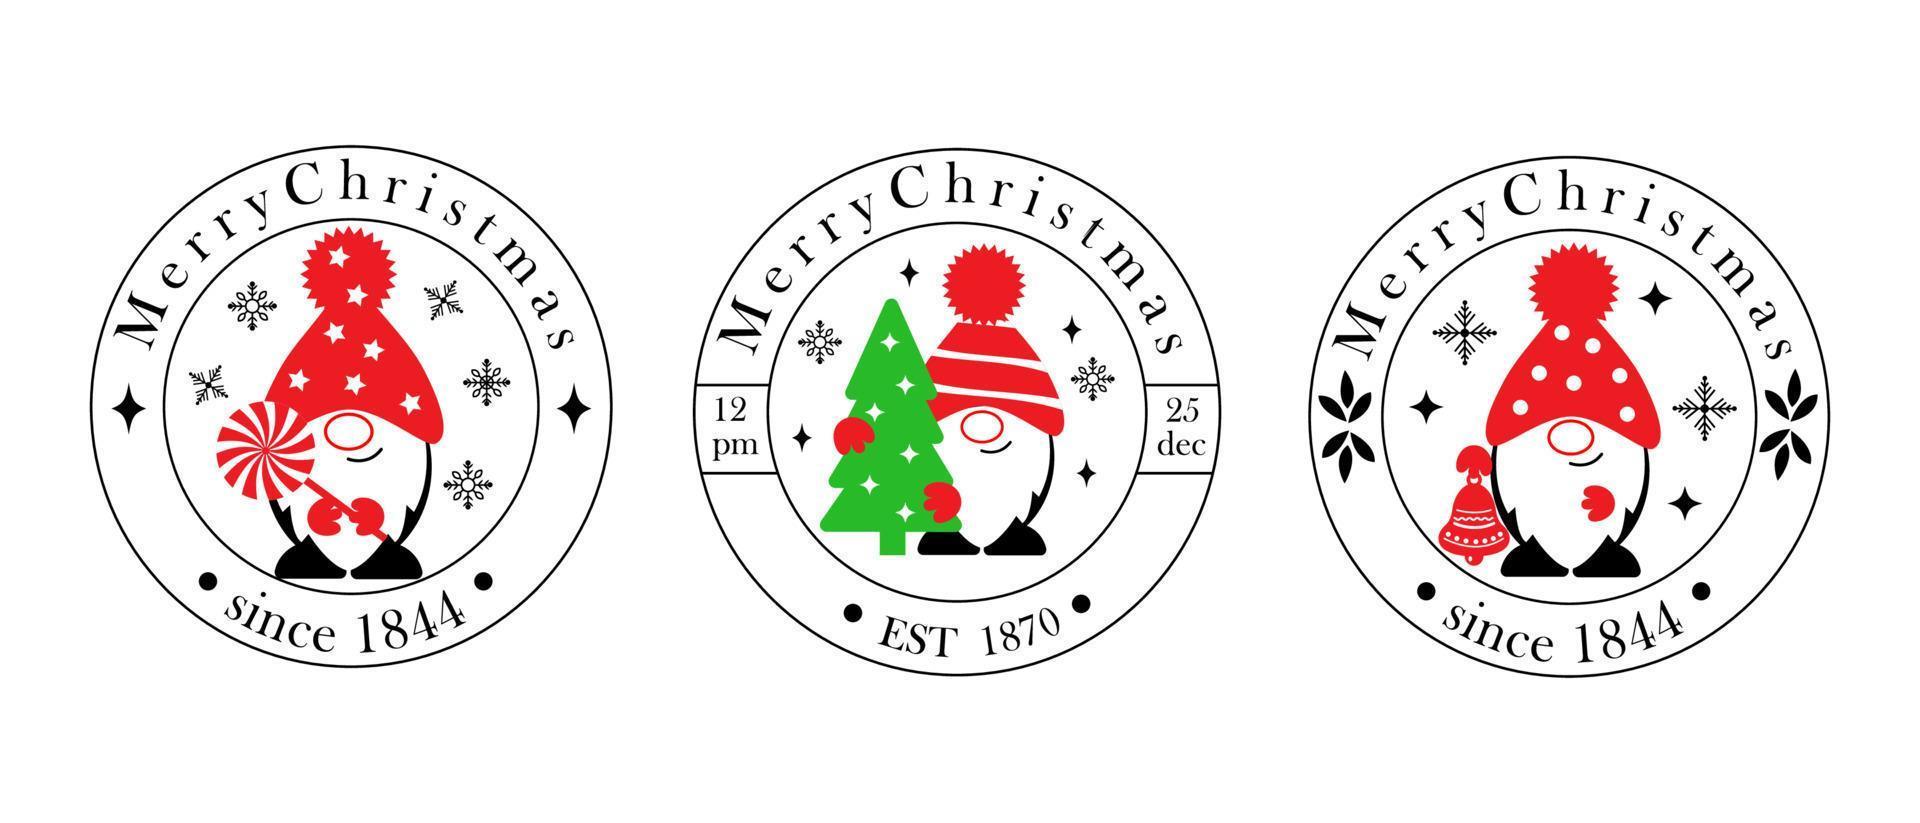 Reihe von Logos mit Gnomen. weihnachtstypografieabzeichen für postkarten, geschenke und banner. Design-Elemente-Sammlung mit Dekorationen ornaments.vector vektor